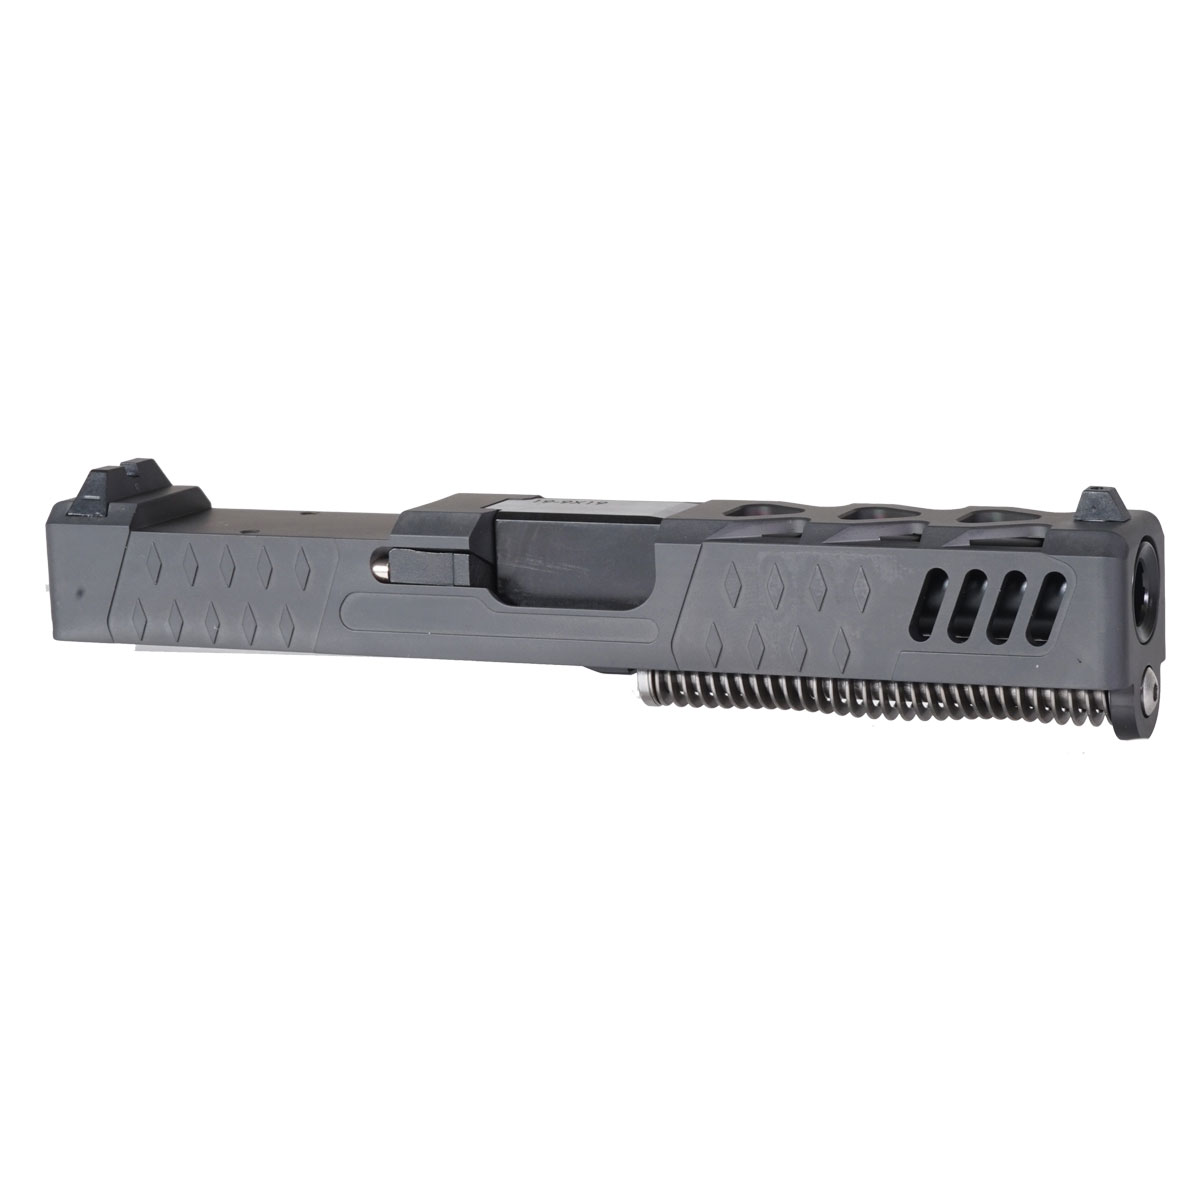 DDS 'The Sarah' 9mm Complete Slide Kit - Glock 19 Gen 1-3 Compatible